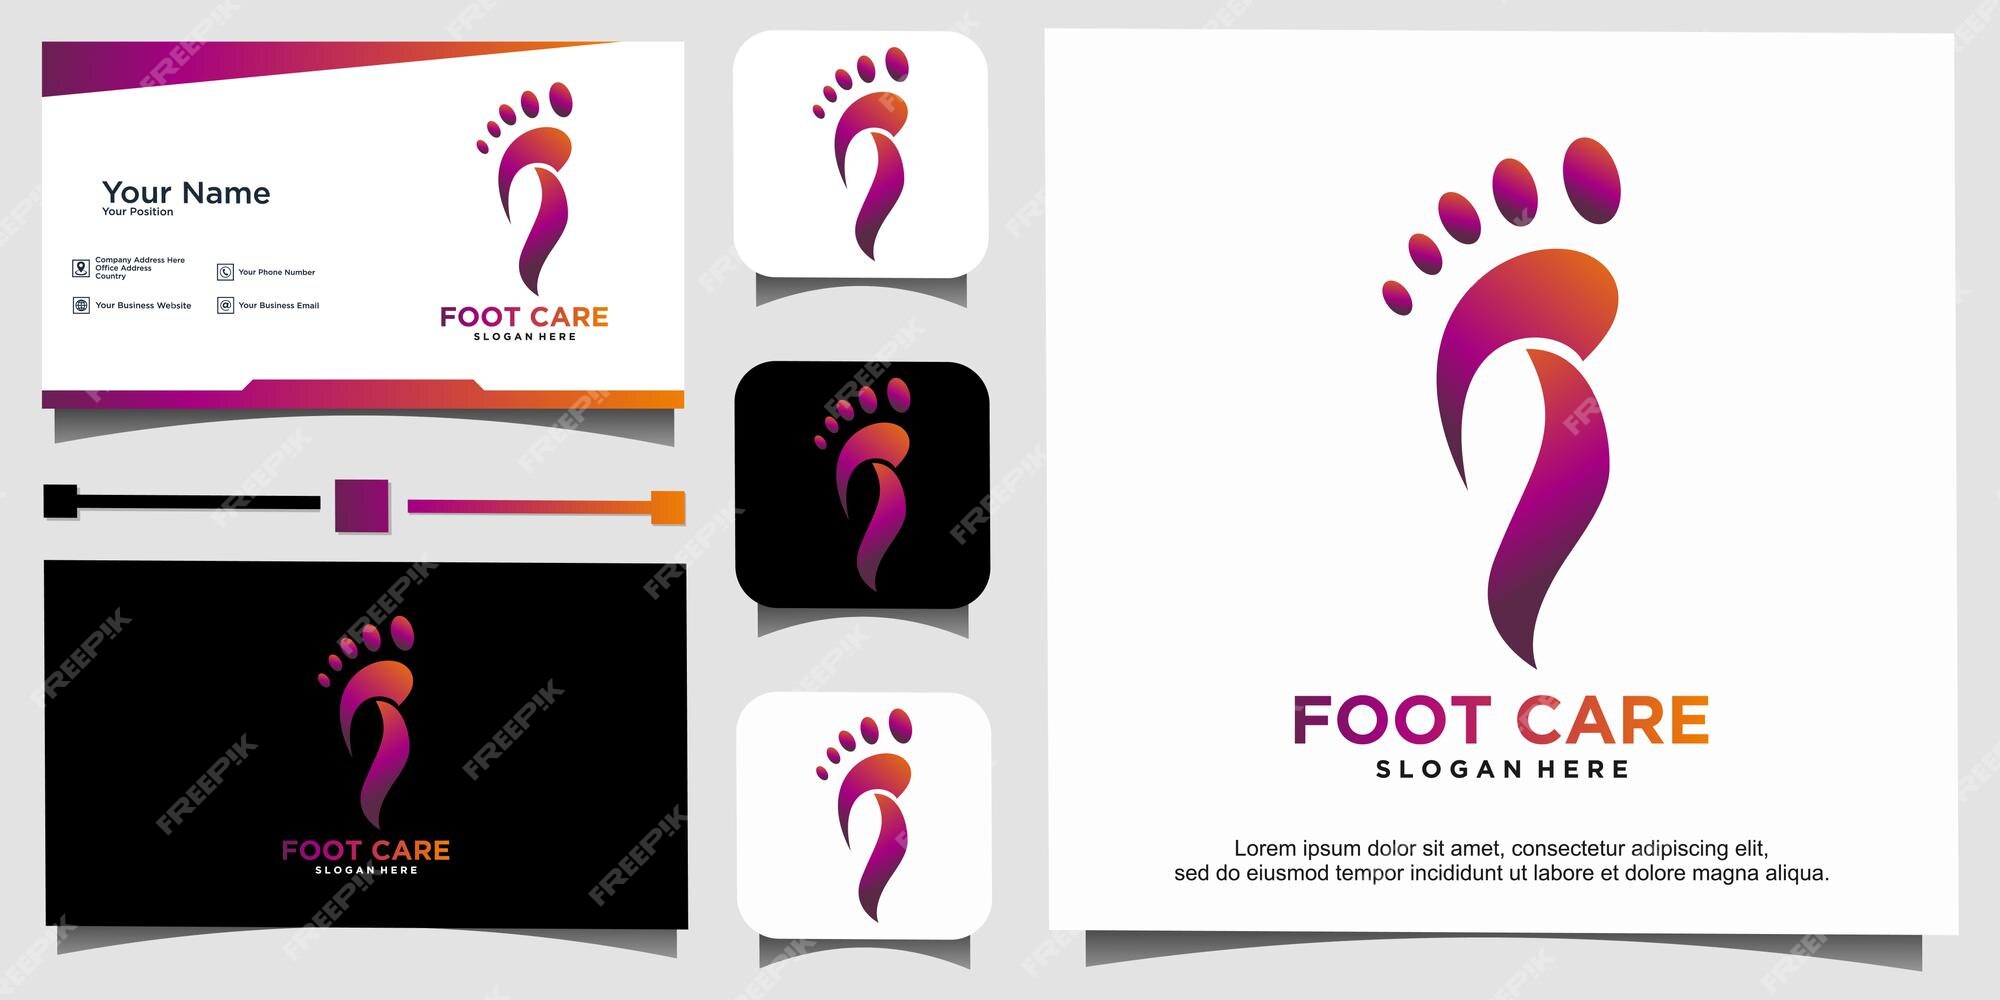 Premium Vector | Unique foot care logo design template